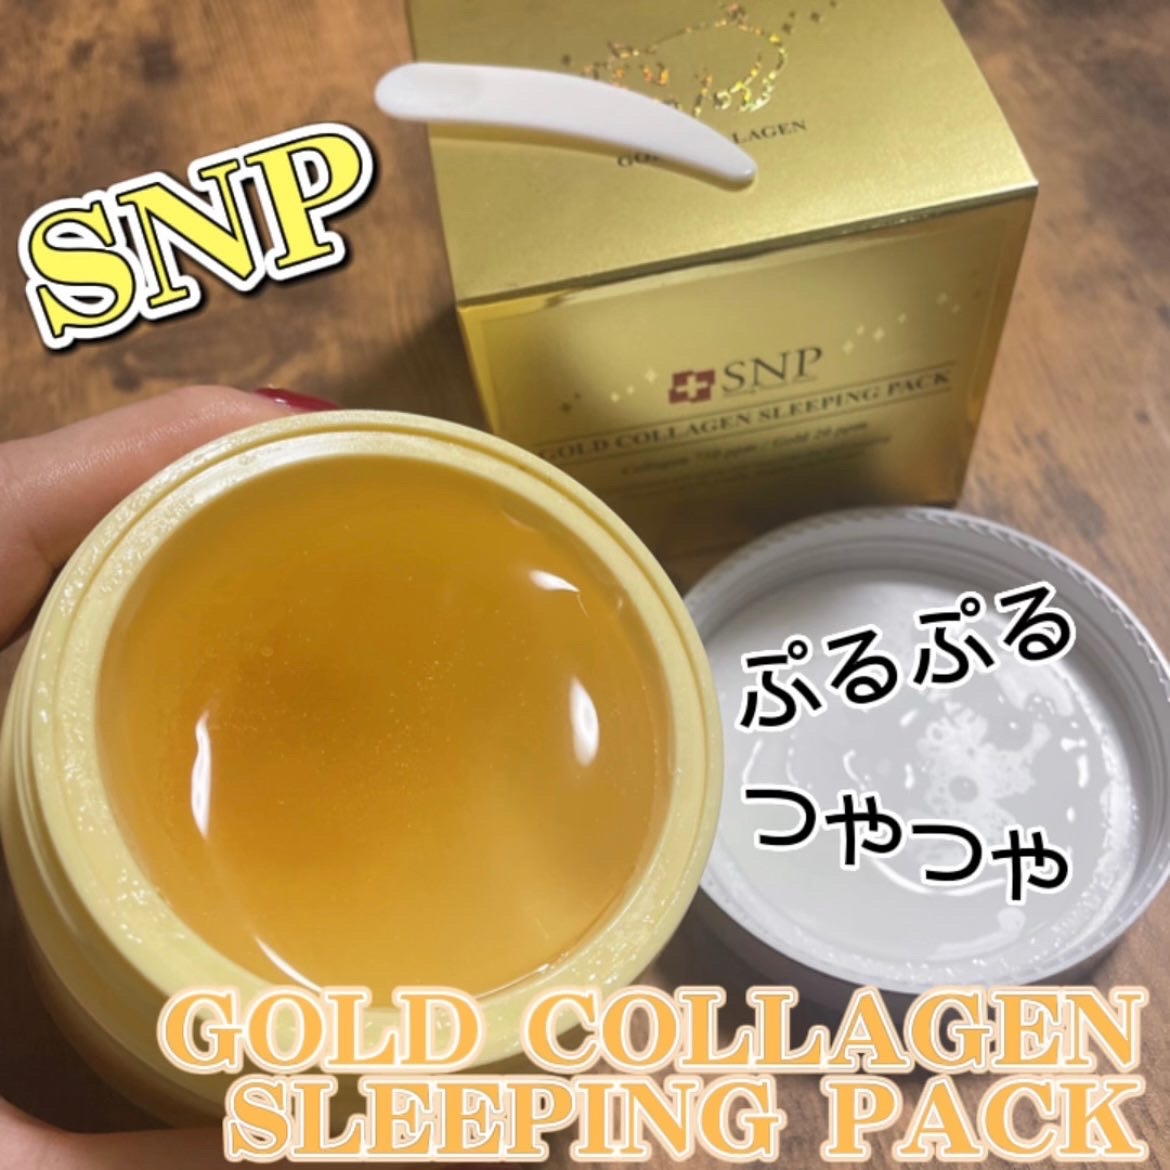 SNP(エスエヌピー) ゴールドコラーゲンスリーピングパックに関するSaE💜さんの口コミ画像1